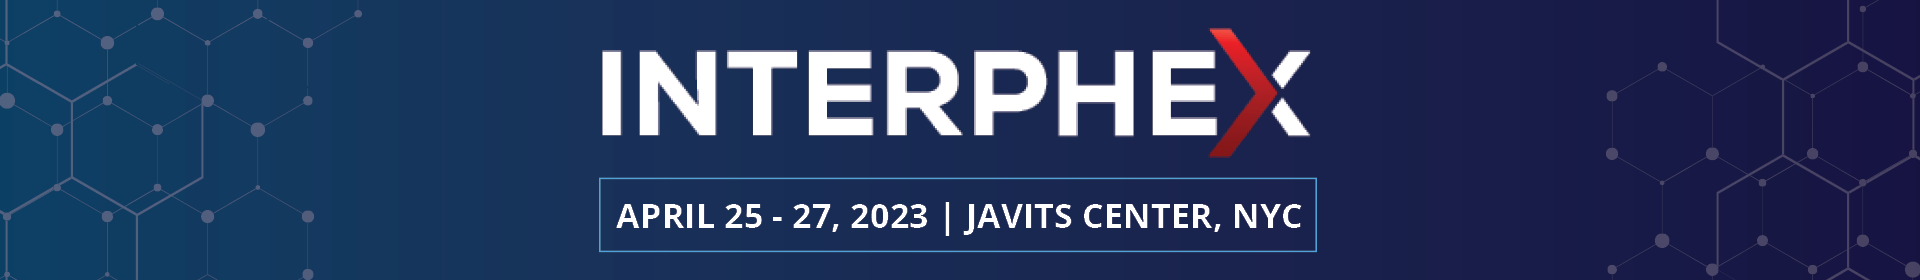 INTERPHEX 2023 Event Banner